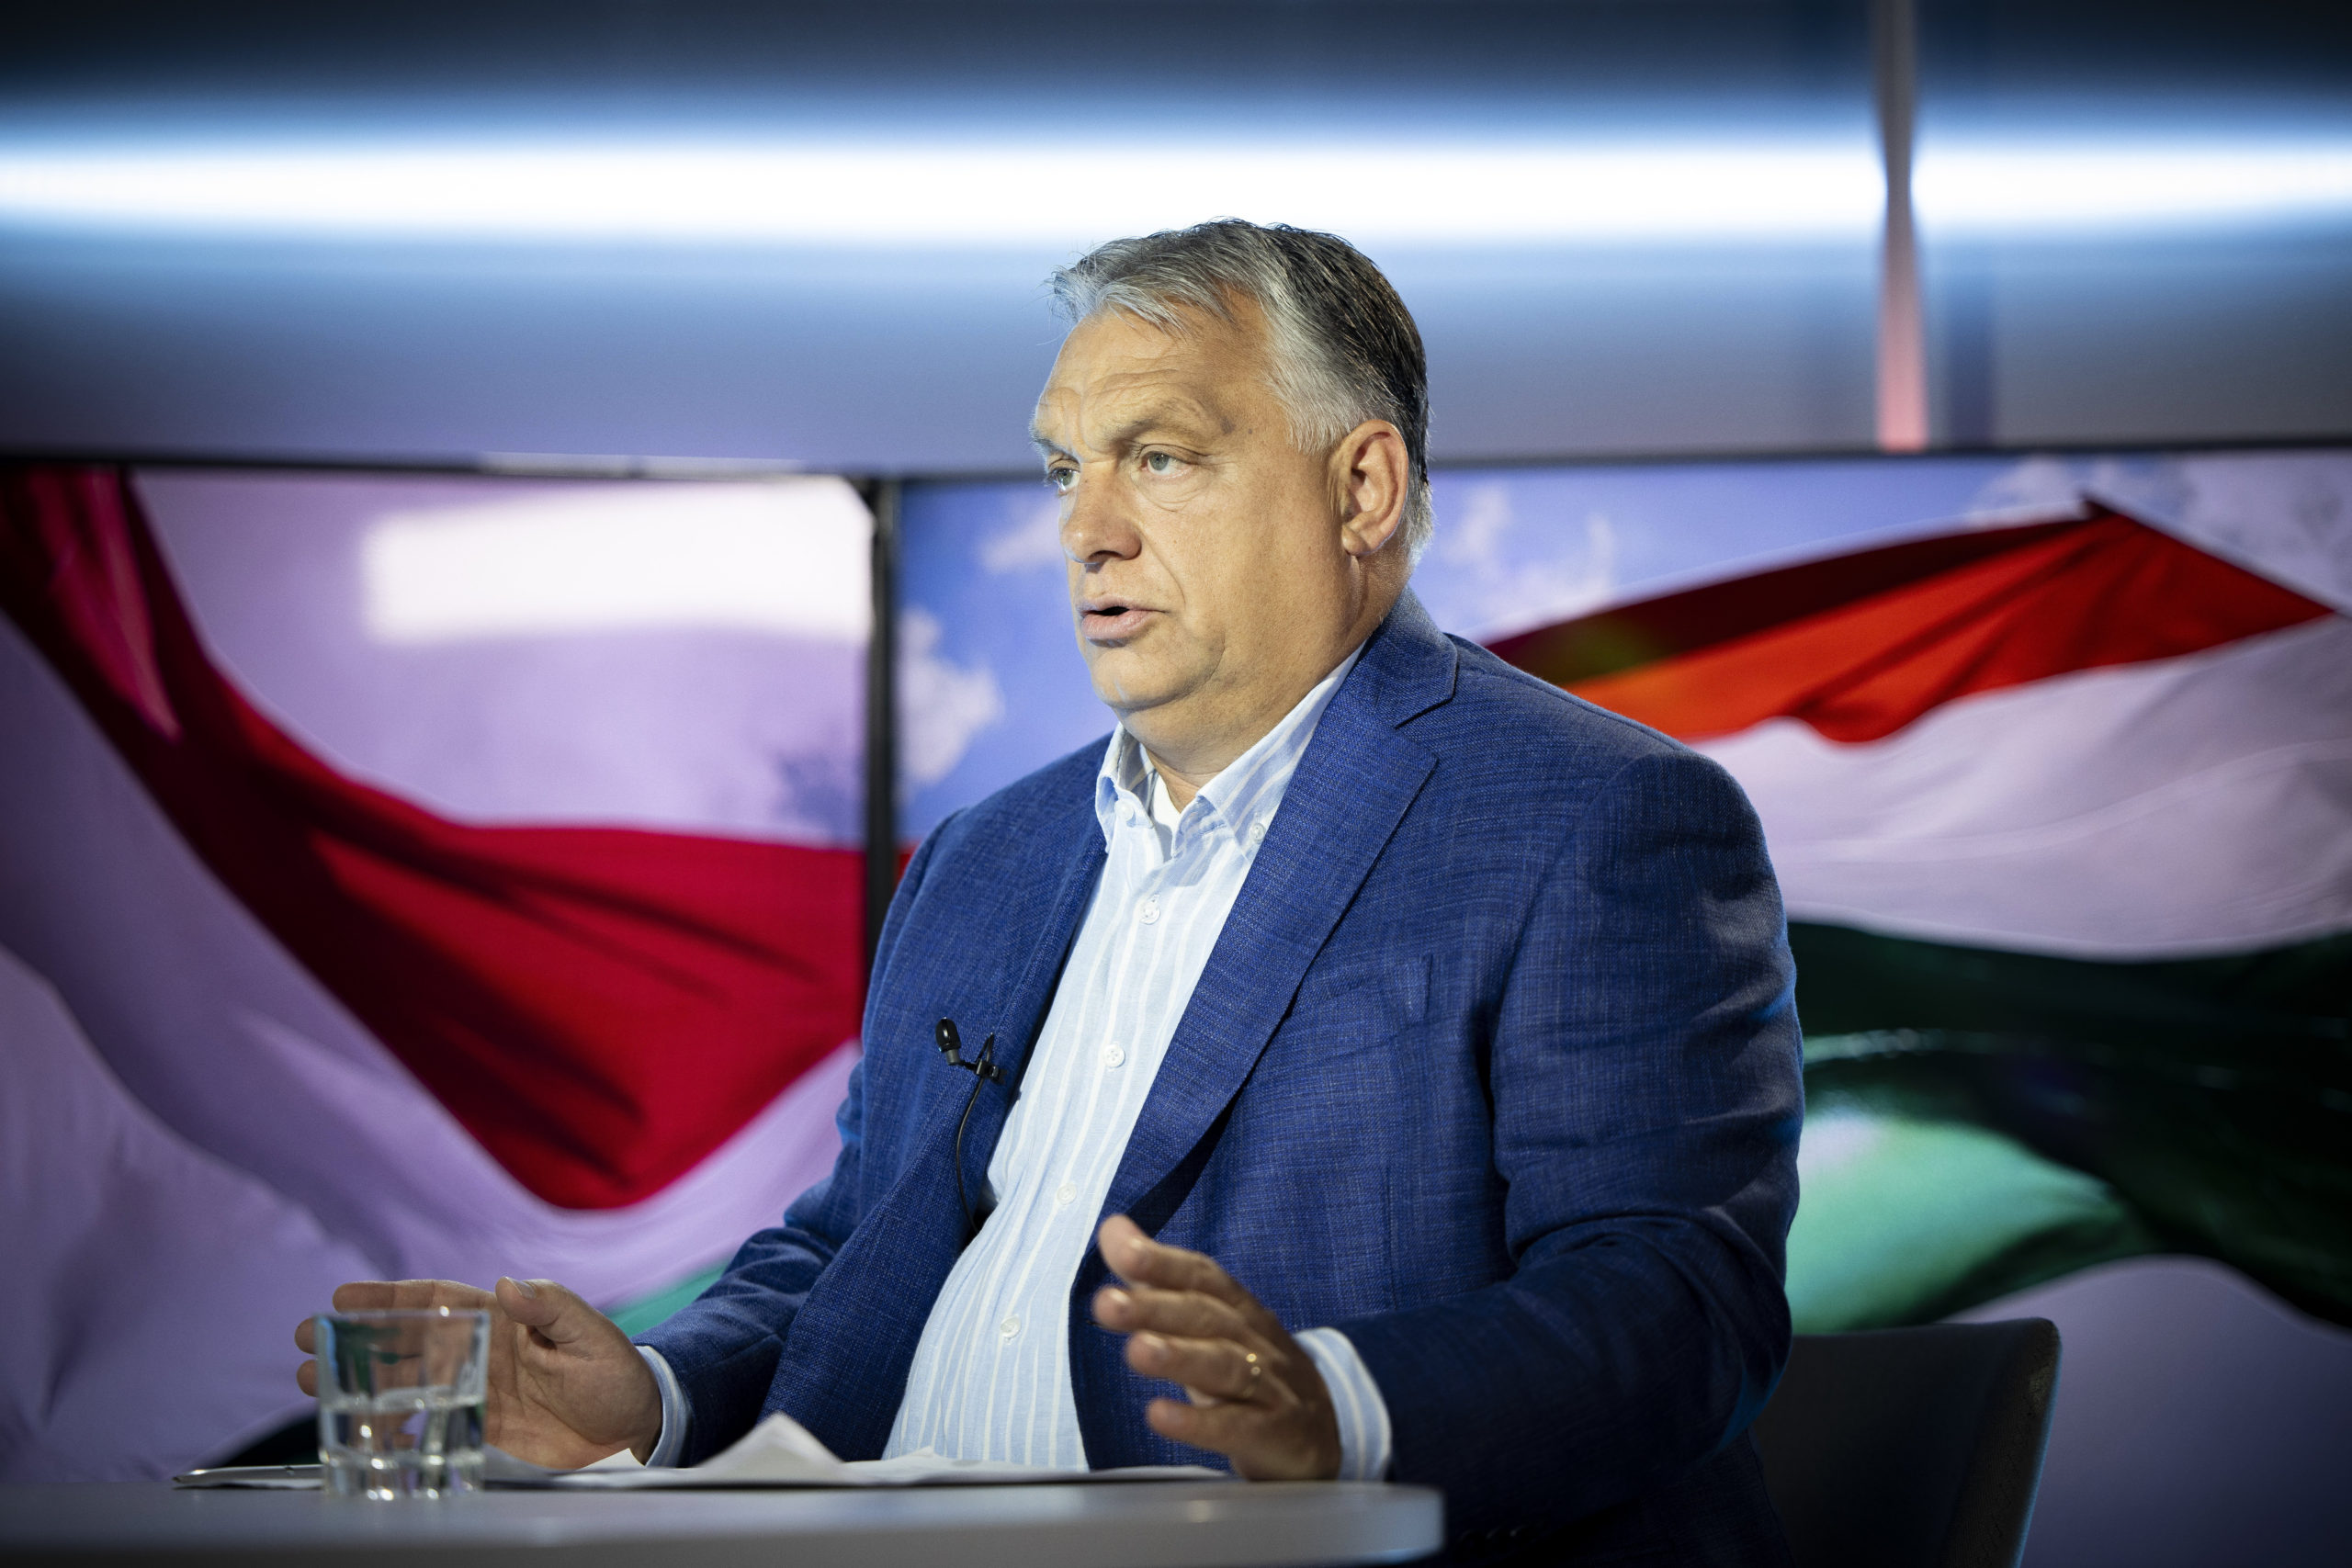 Orbán Viktor: A migráció és a terrorizmus kéz a kézben jár